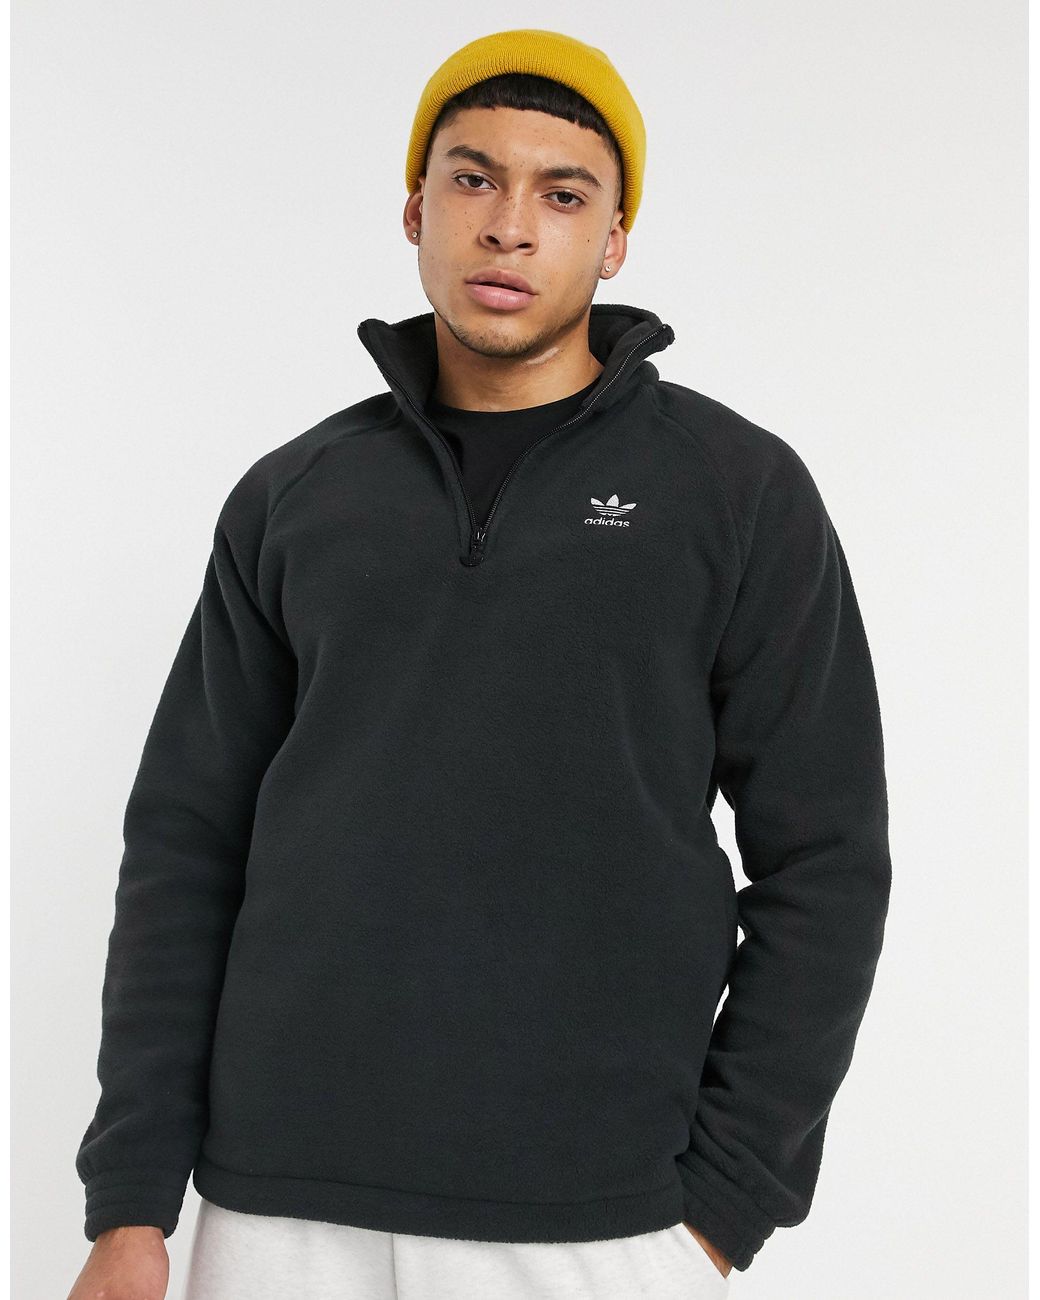 adidas Originals 1/4 Zip Fleece Sweatshirt in Black for Men - Save 34% |  Lyst